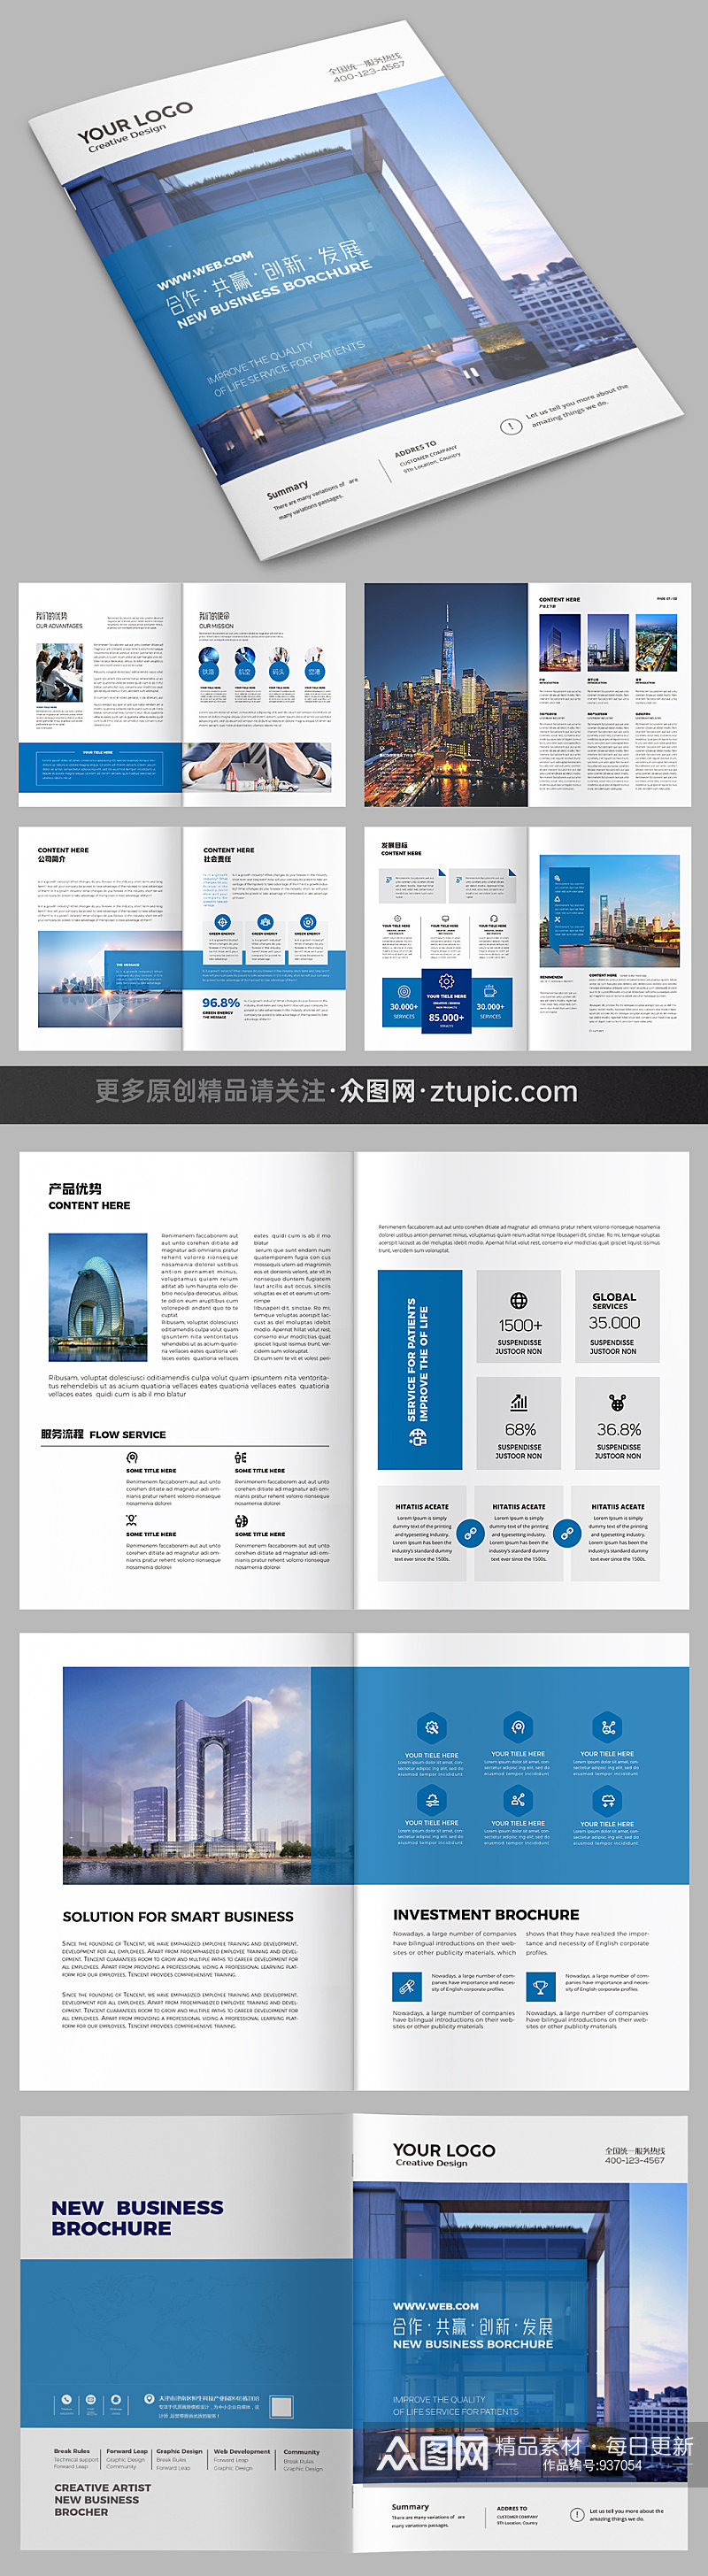 蓝色大气企业画册设计模板素材